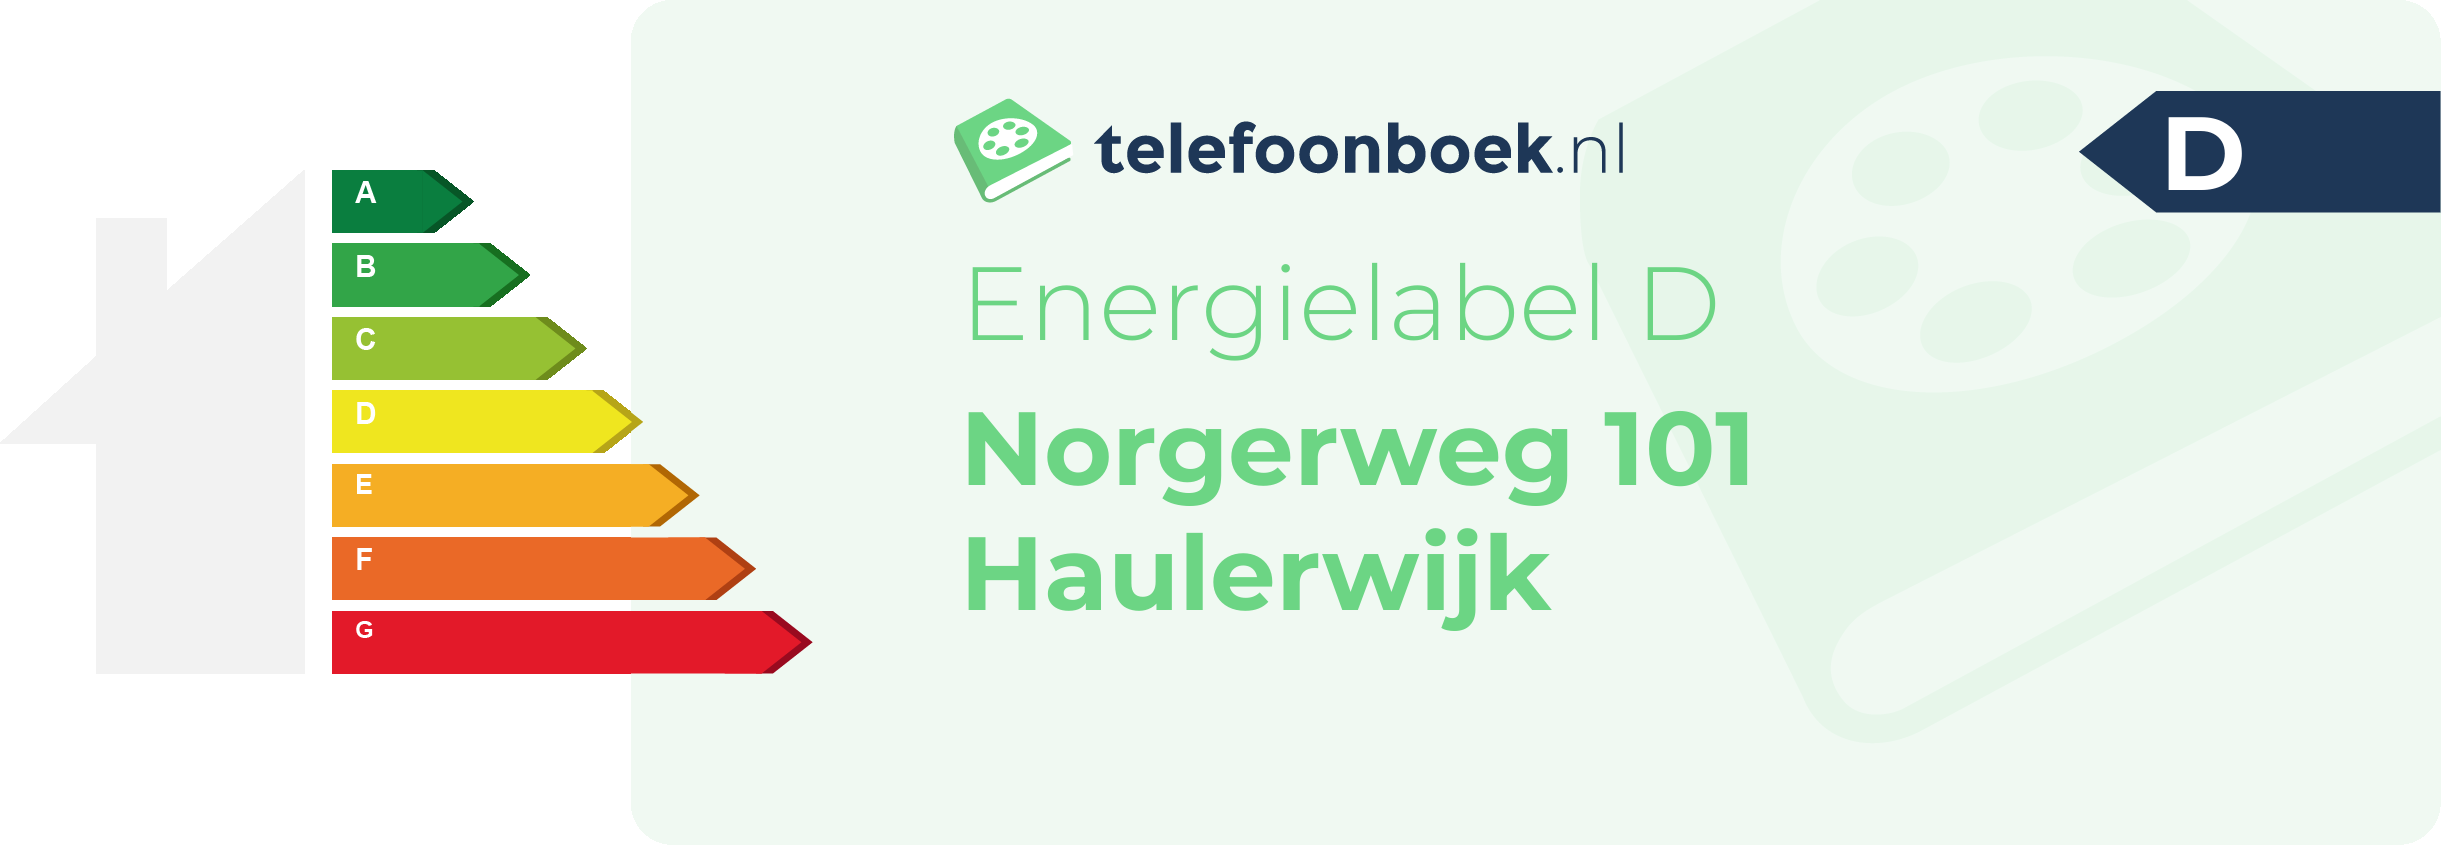 Energielabel Norgerweg 101 Haulerwijk